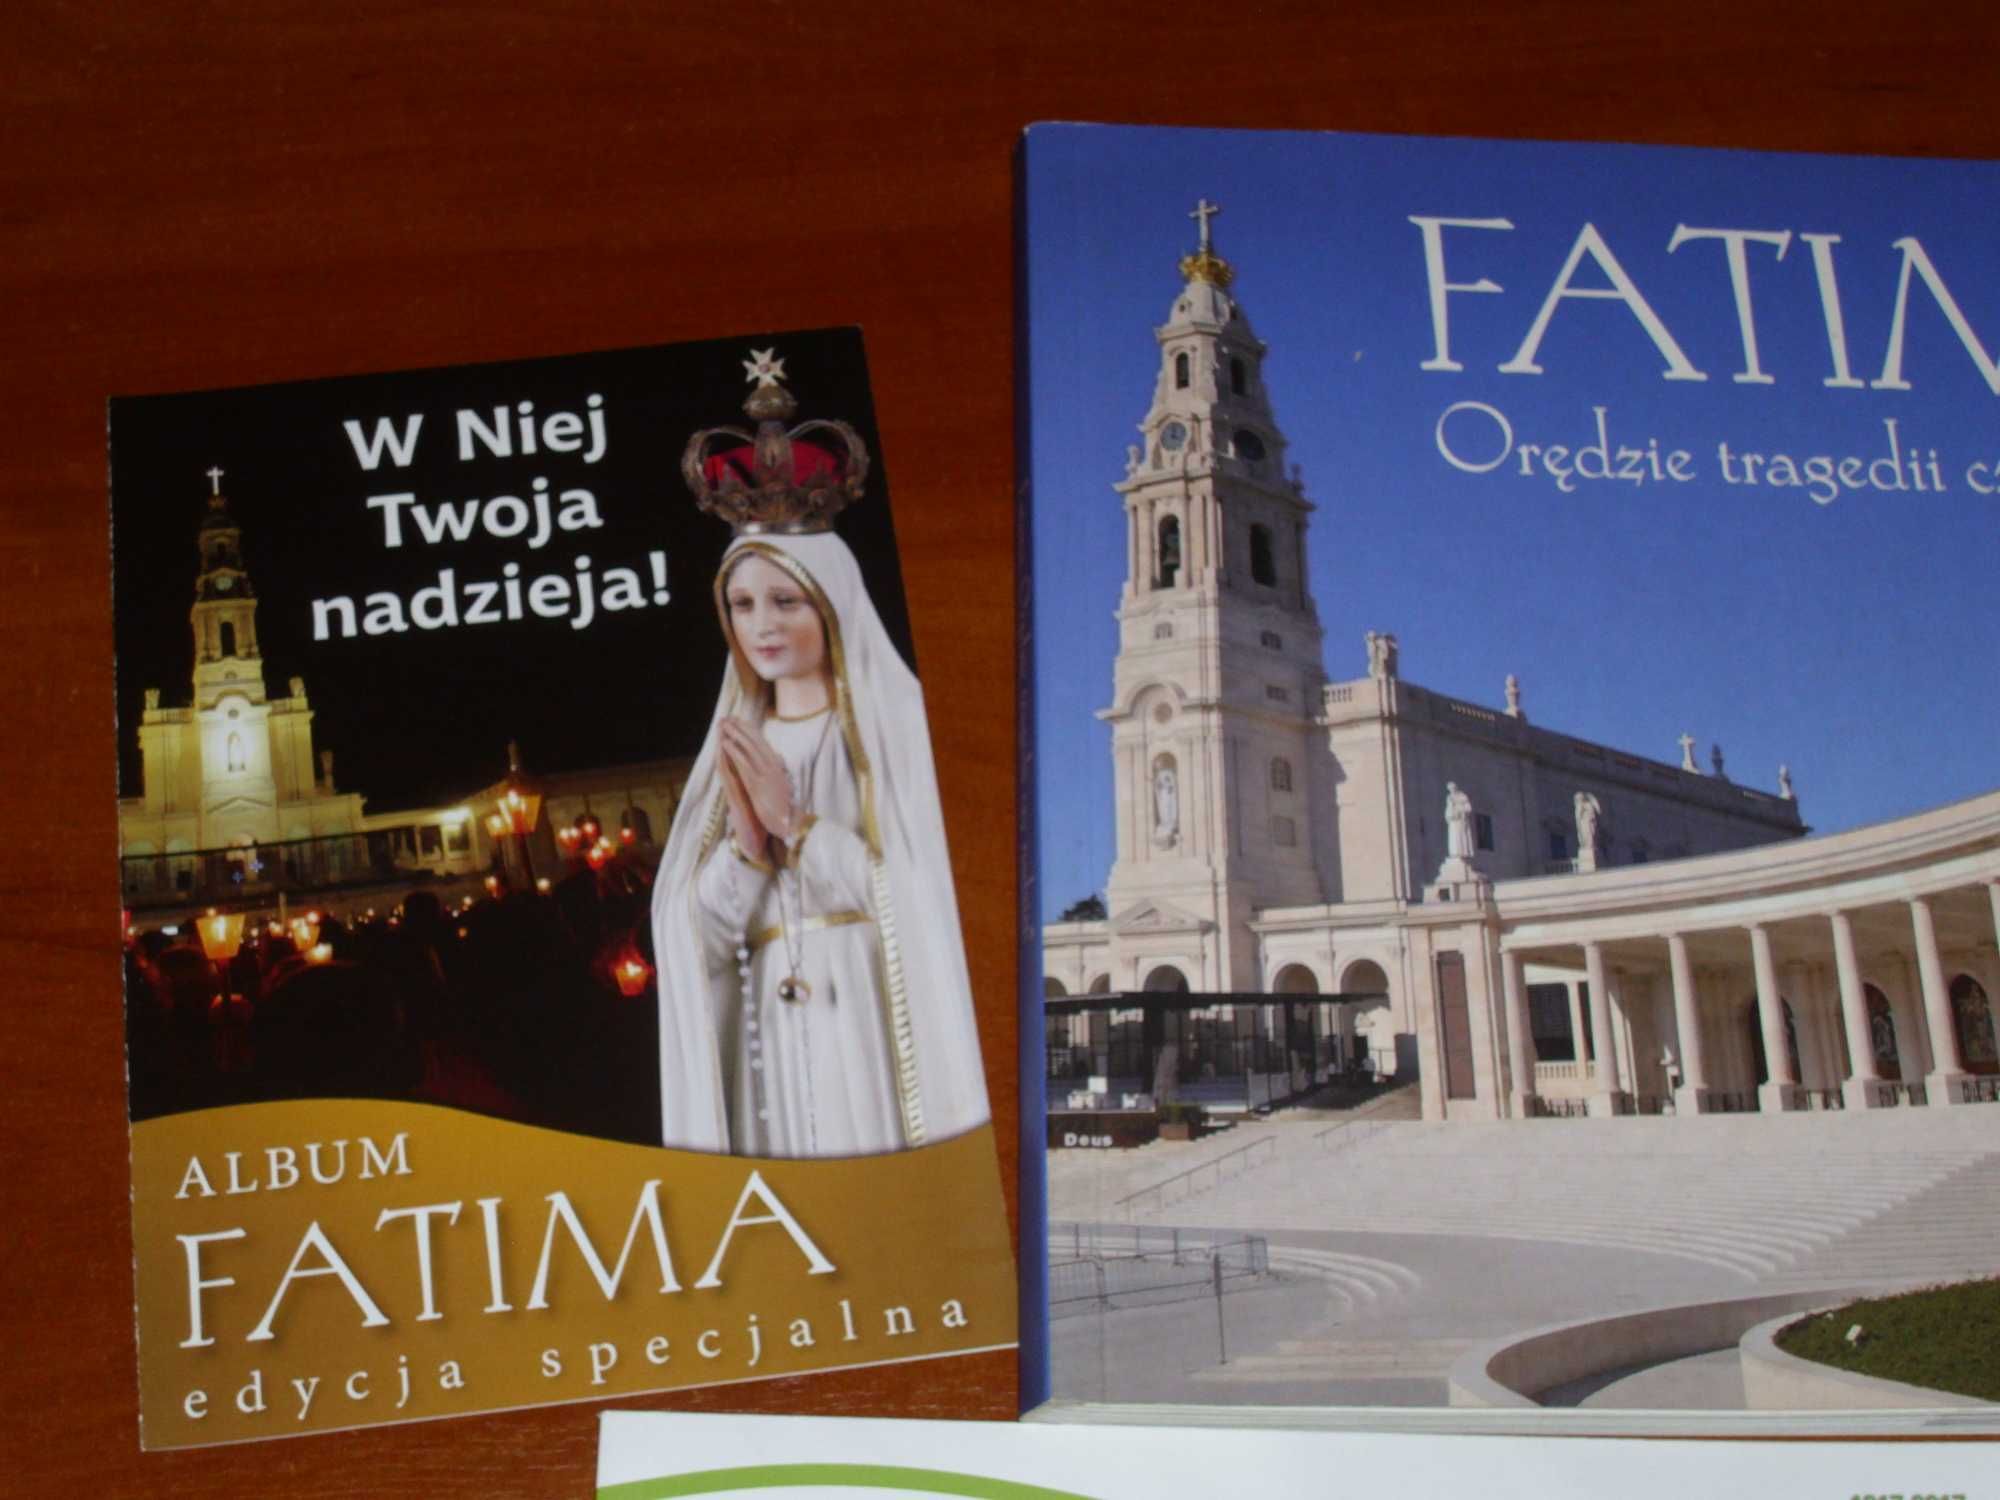 Fatimska Pani - Fatima Orędzie tragedii czy nadziei